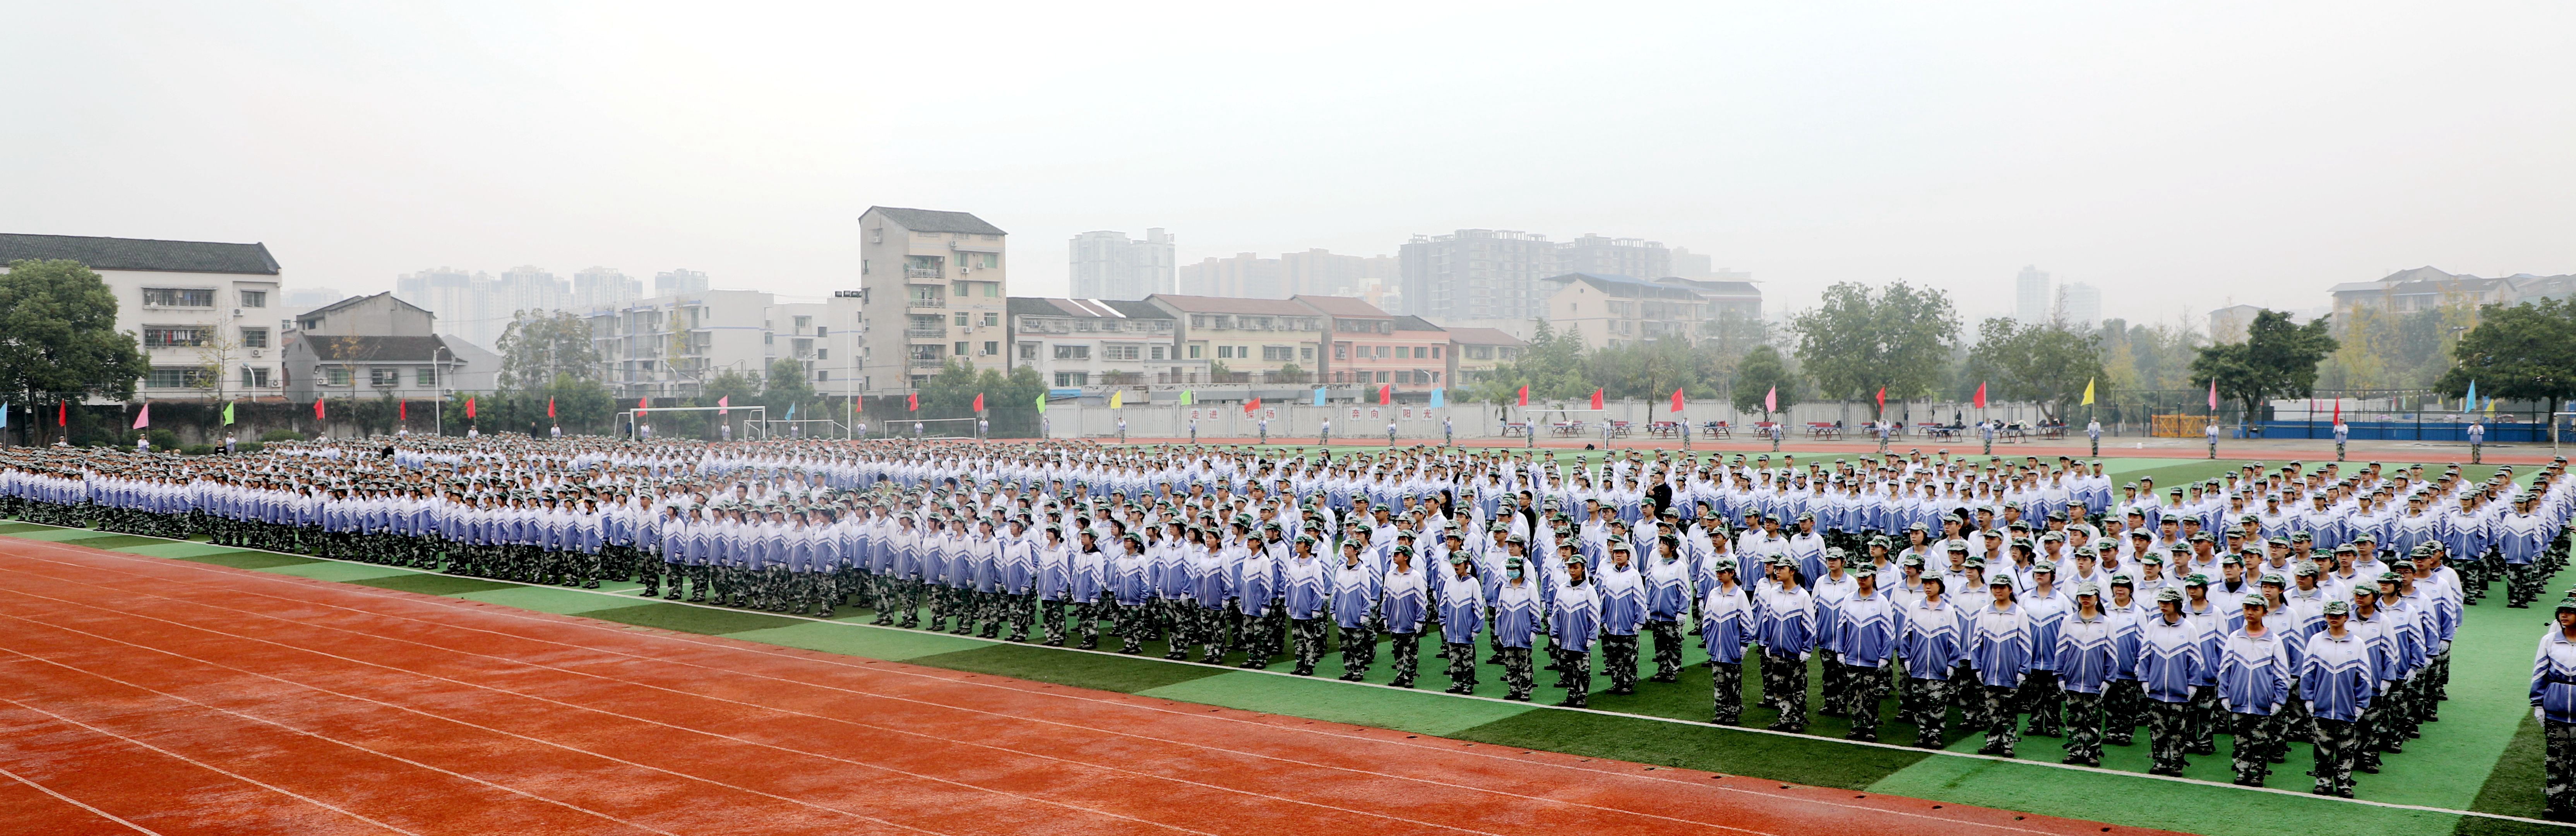 大竹中学举行高2022级军训结训典礼